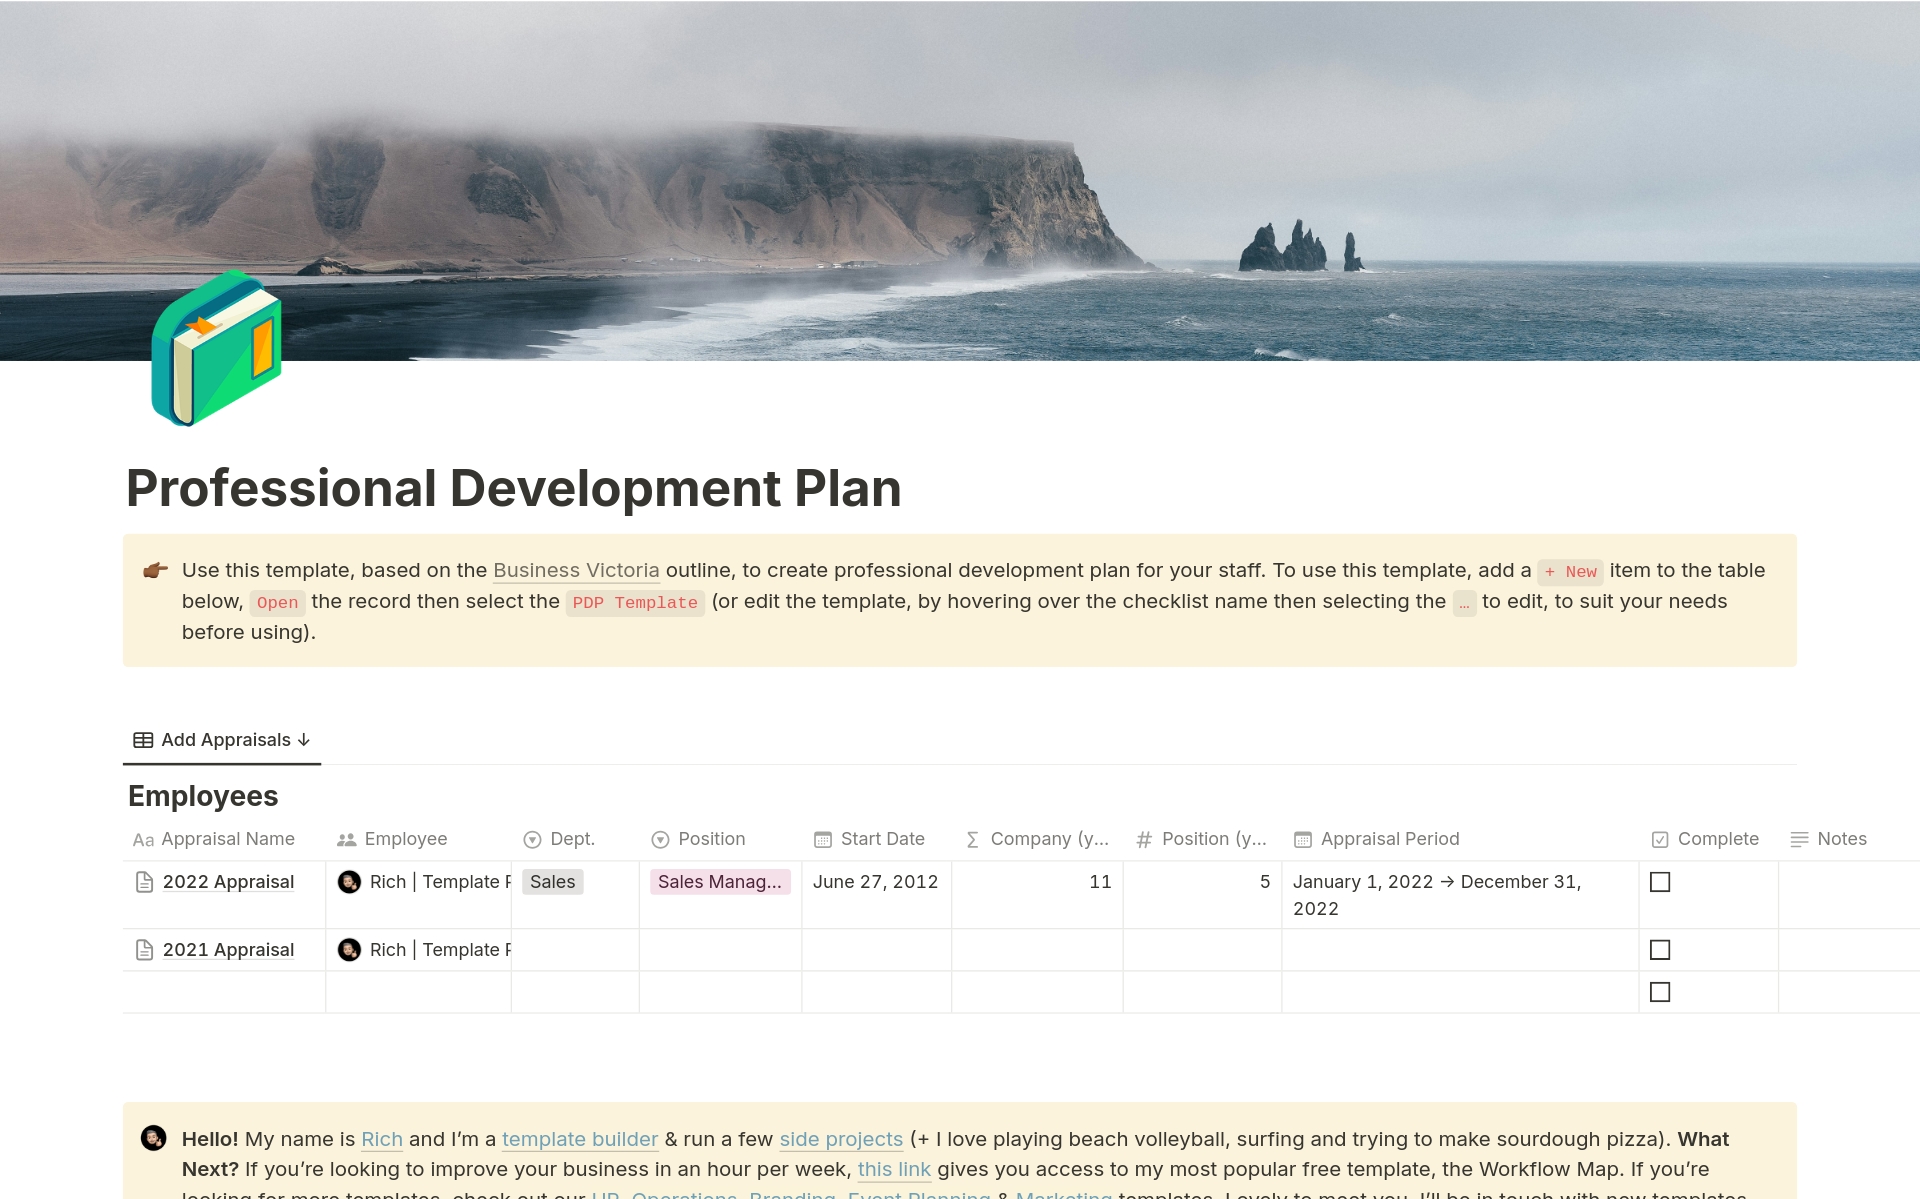 Aperçu du modèle de Professional Development Plan